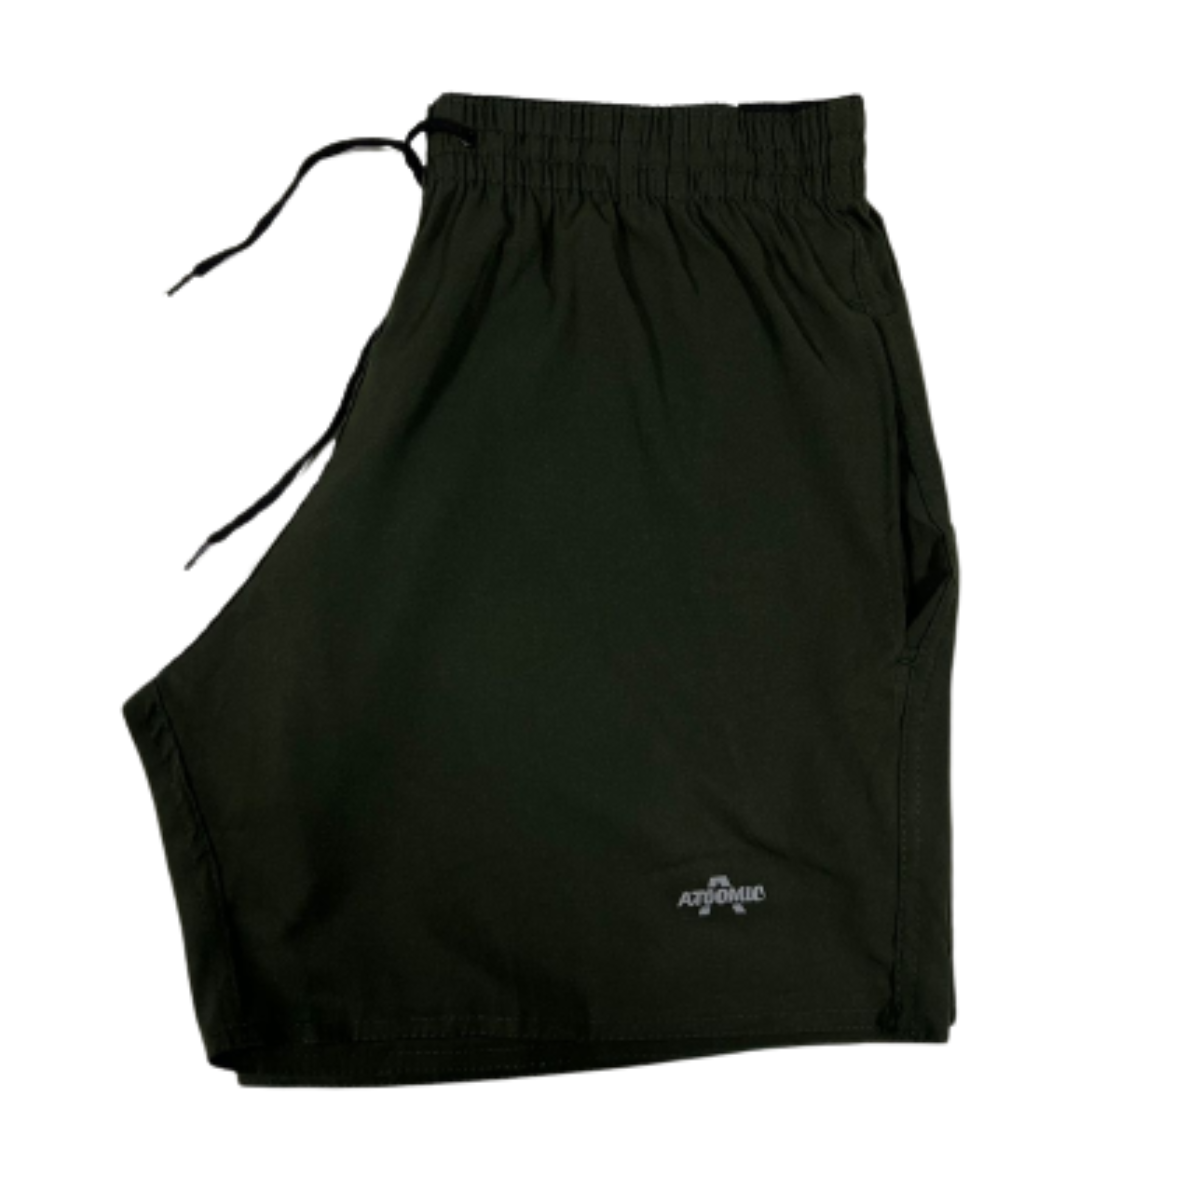 Kit 2 Bermuda Shorts Elastano Premium Treino